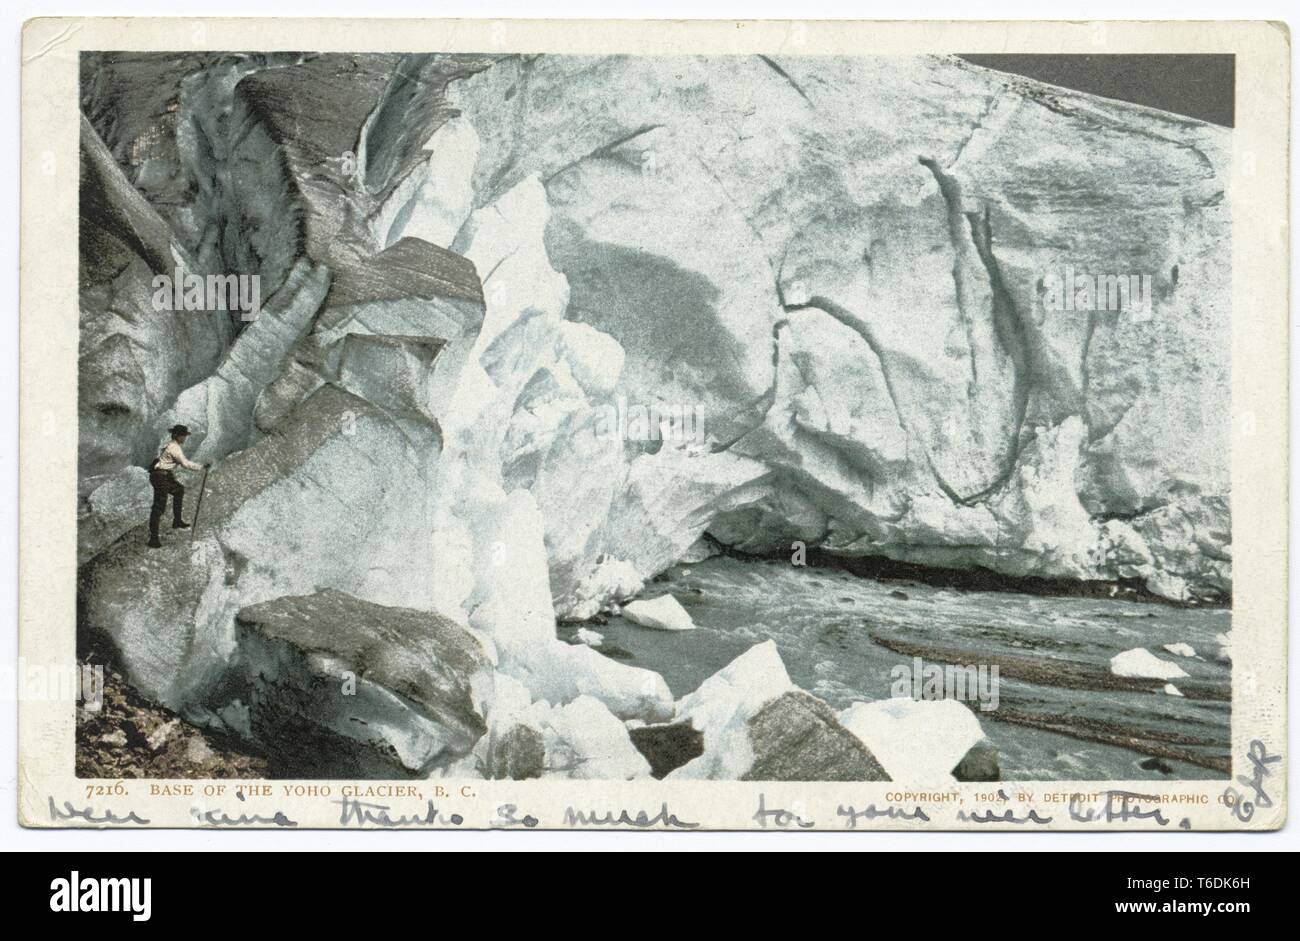 Detroit Photographic Company vintage postcard la reproduction de l'homme de base de l'escalade de glacier Yoho en Colombie-Britannique, Canada, 1914. À partir de la Bibliothèque publique de New York. () Banque D'Images